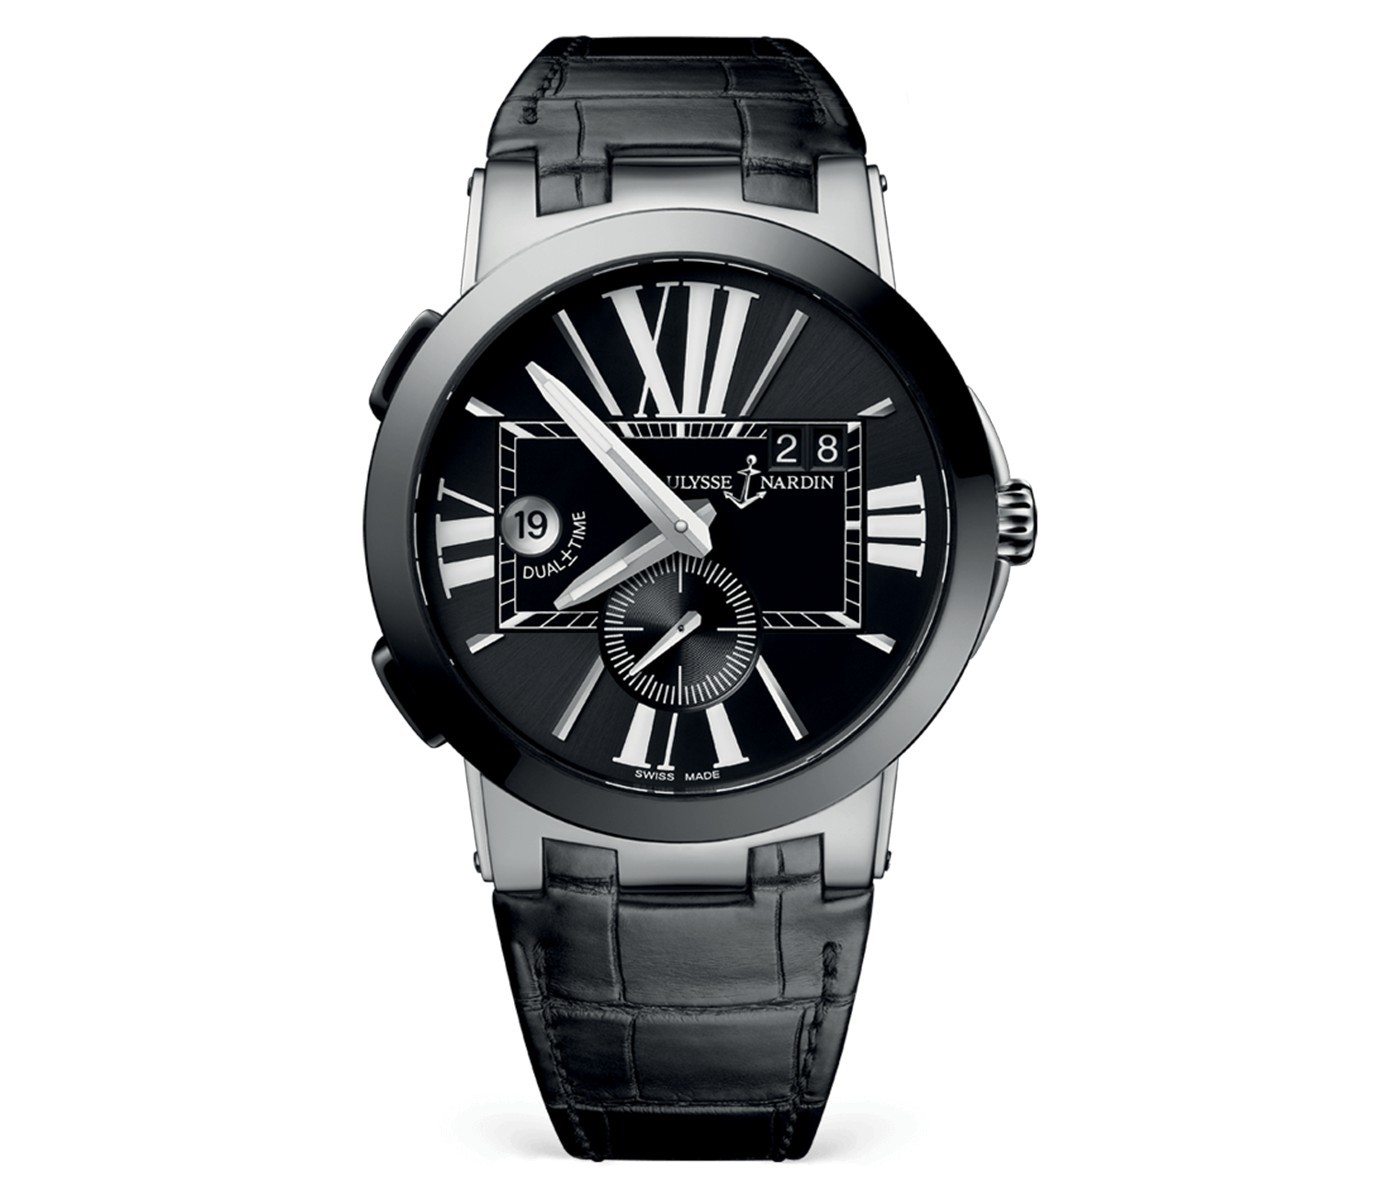 百达翡丽手表并没有批量生产的专业技术，雅典表批量生产了